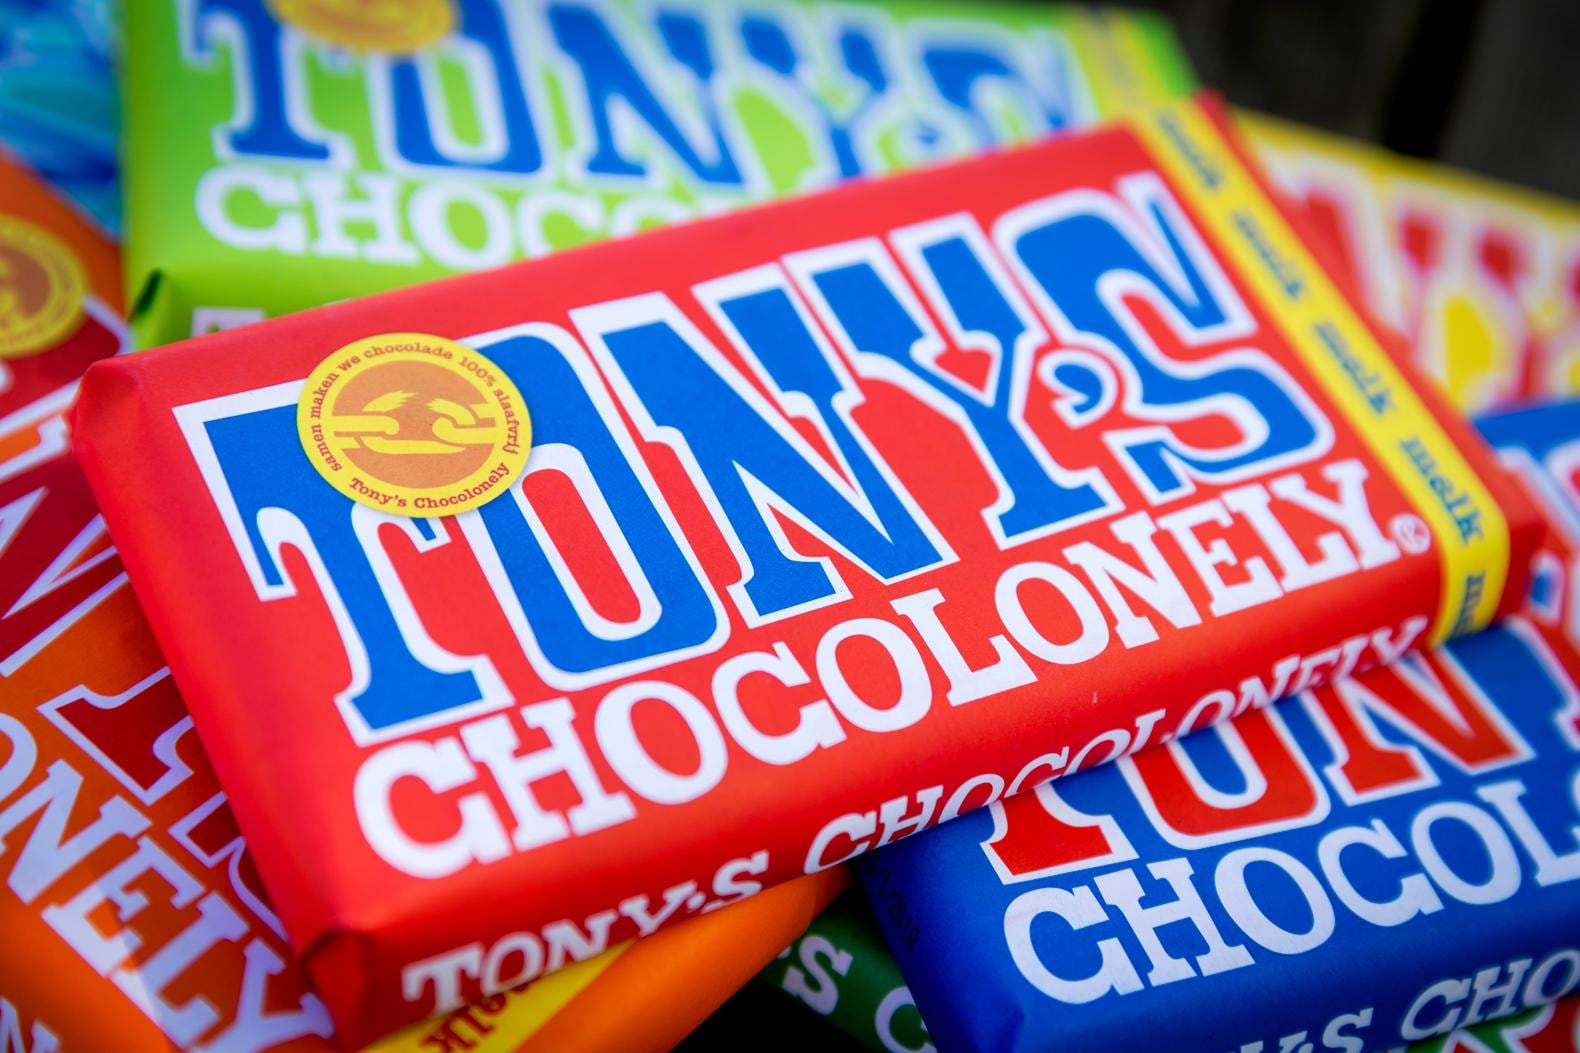 ‘Chocoladecircus’ van de baan: Tony’s Chocolonely bouwt toch geen eigen fabriek